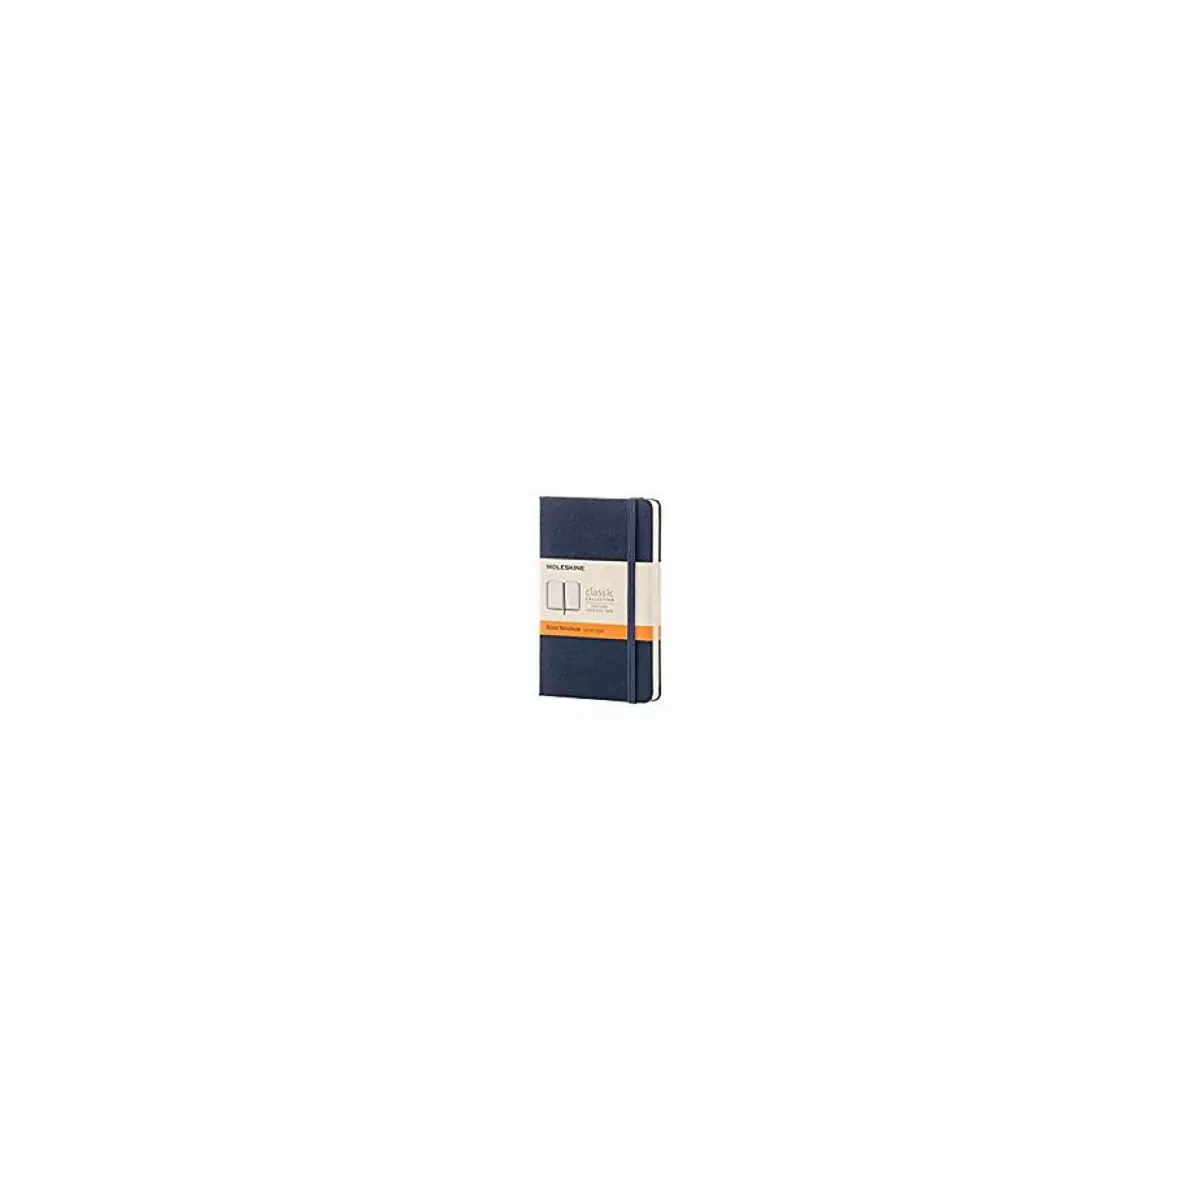 Moleskine carnet Format de poche couverture rigide saphir